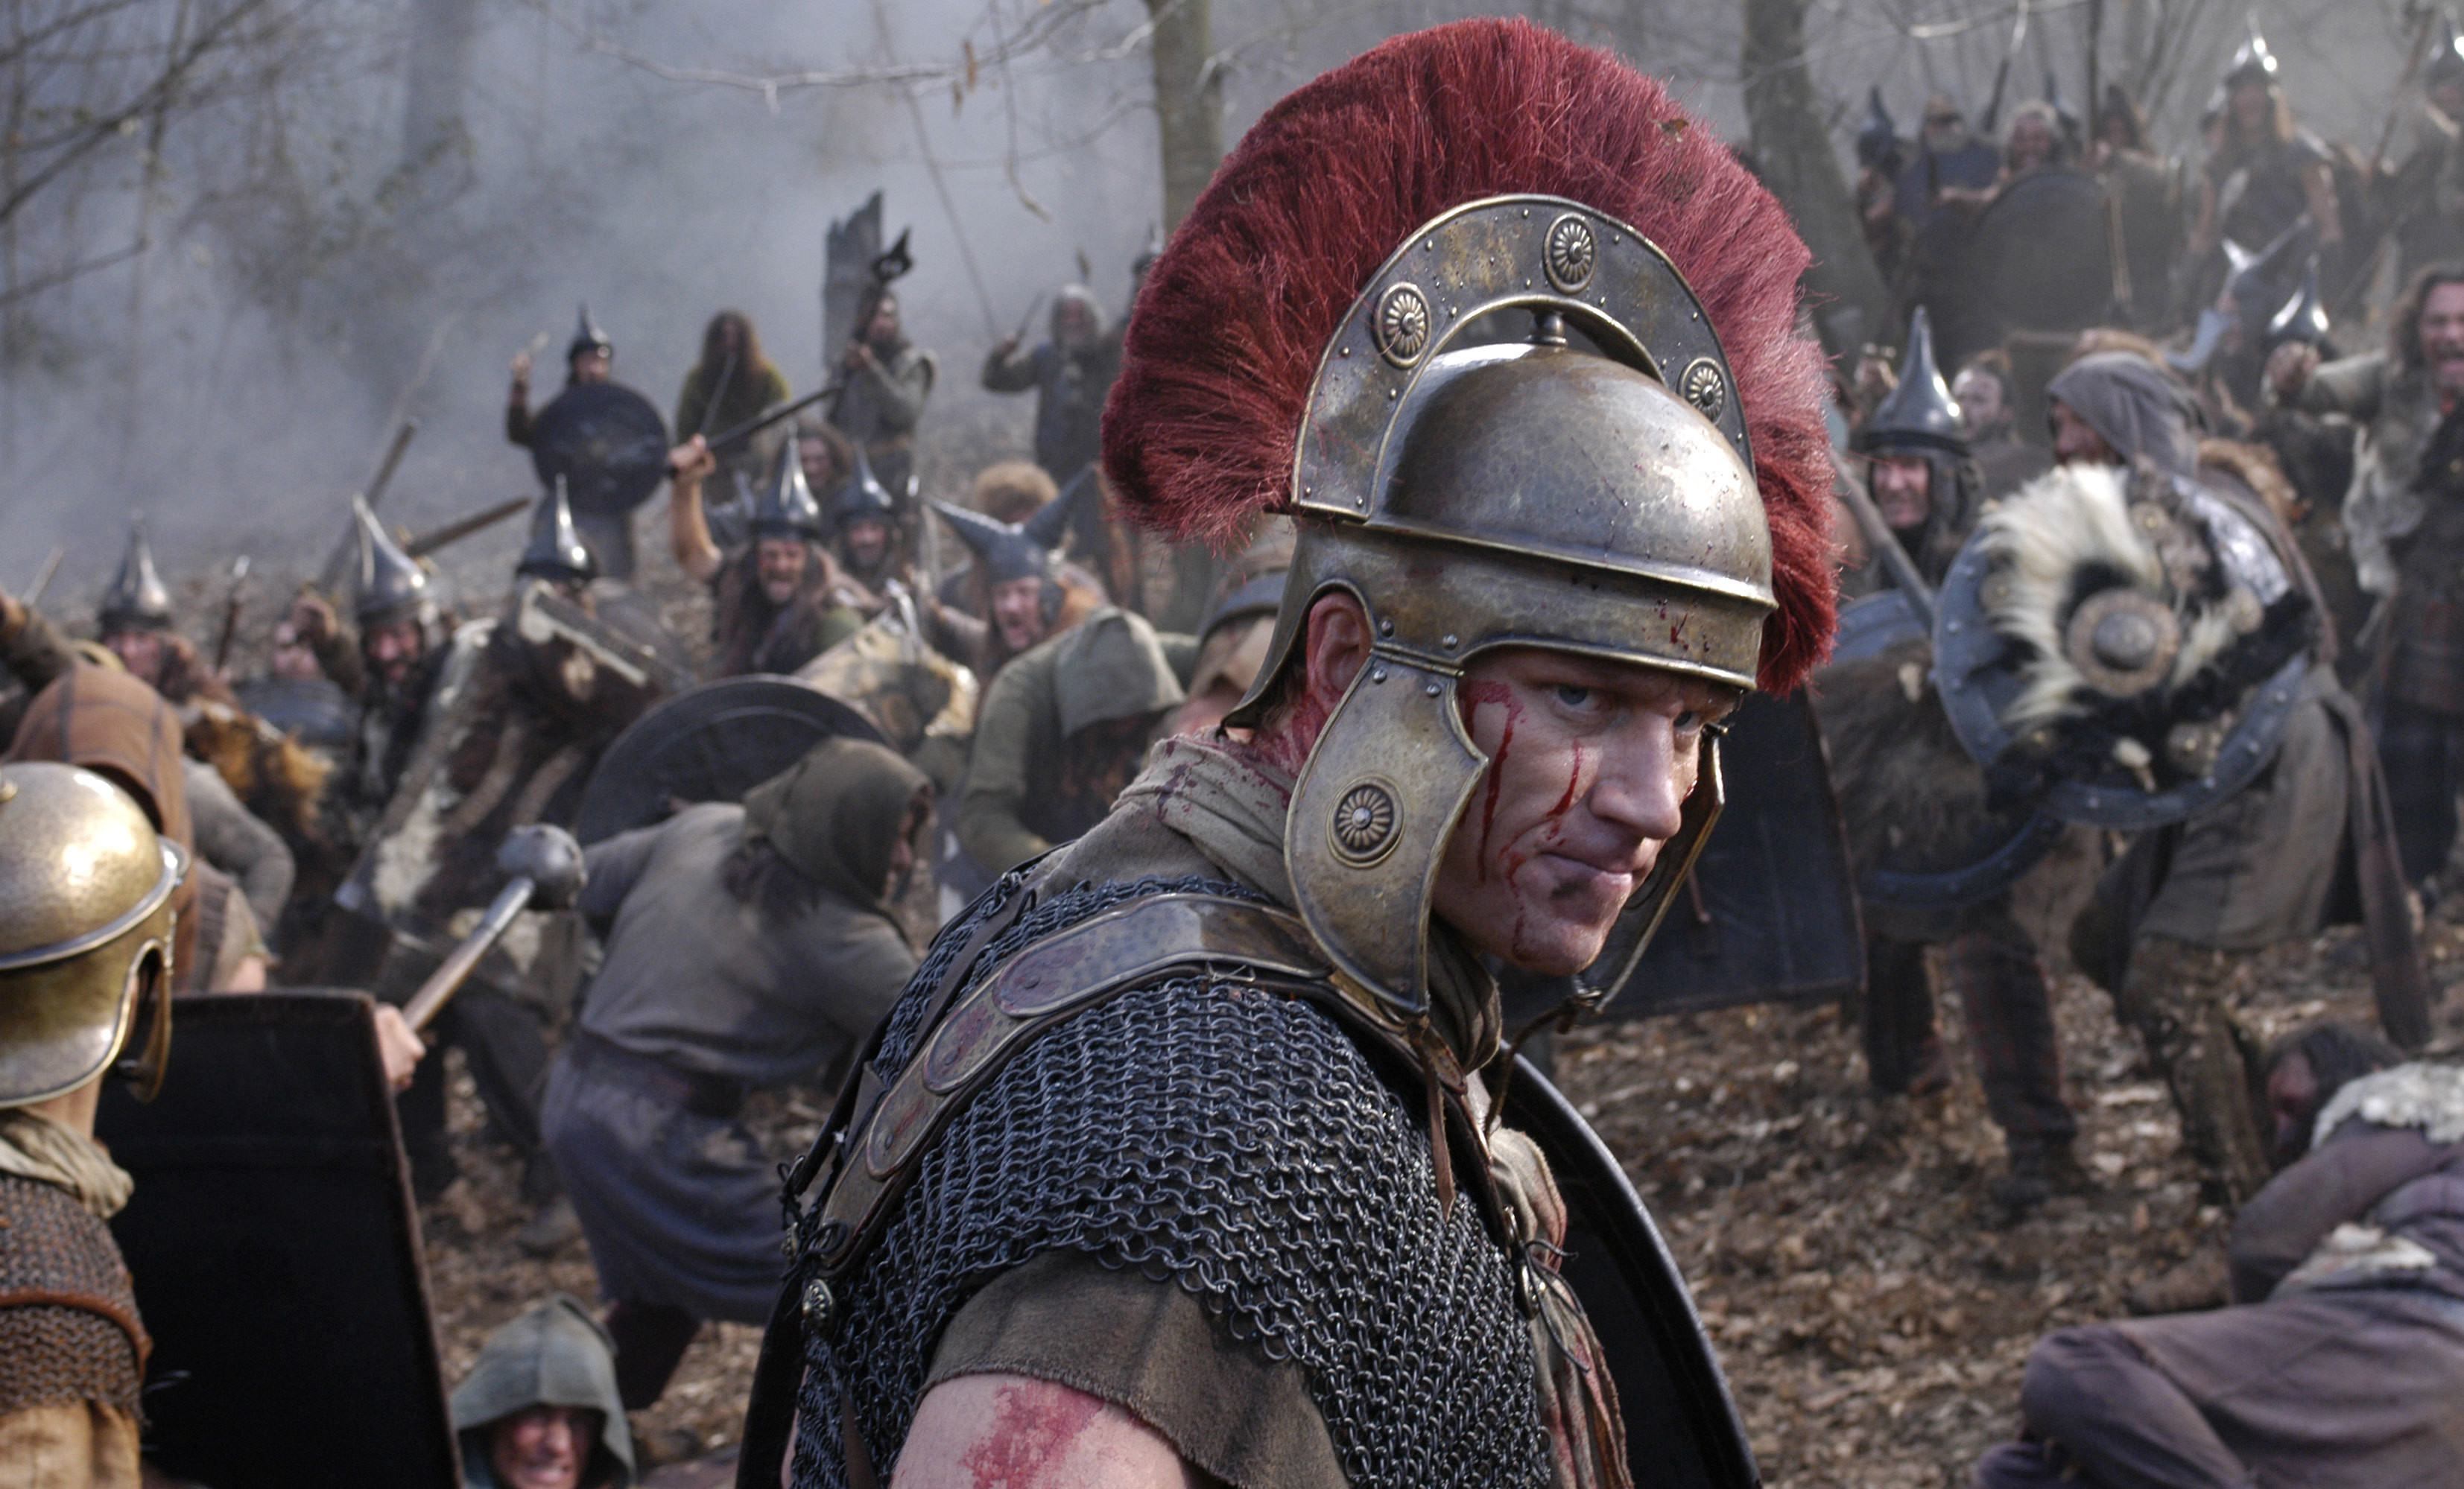 römischer soldat tapete,helm,rebellion,rüstung,wikinger,persönliche schutzausrüstung